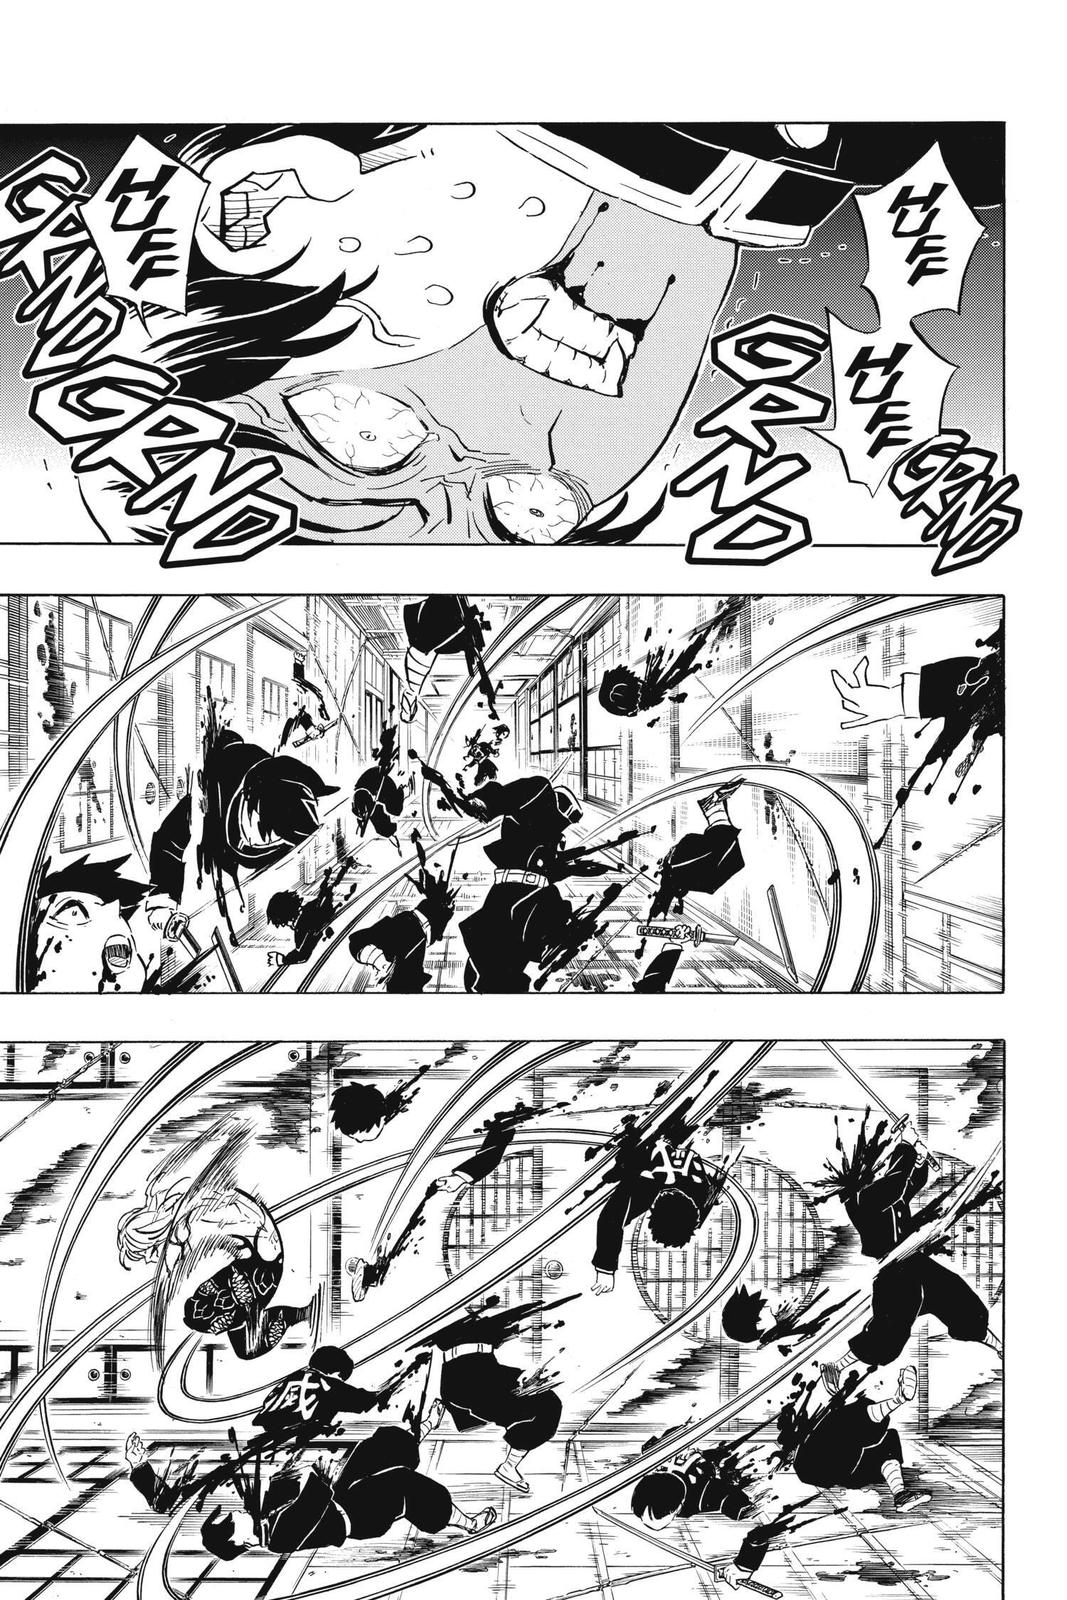 Demon Slayer Manga Manga Chapter - 180 - image 17